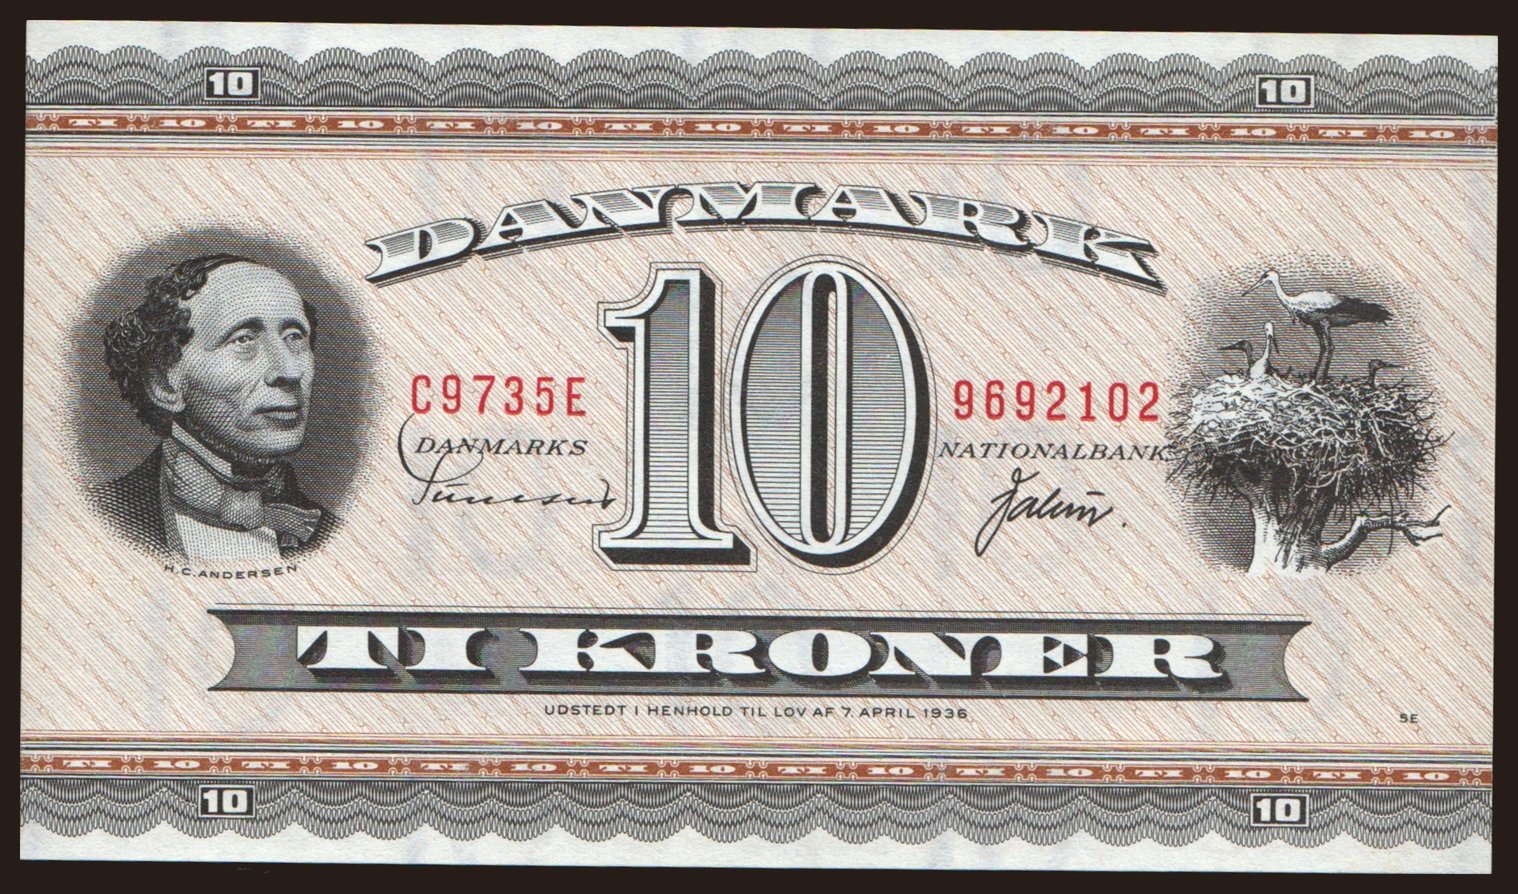 10 kroner, 1936 (1973)